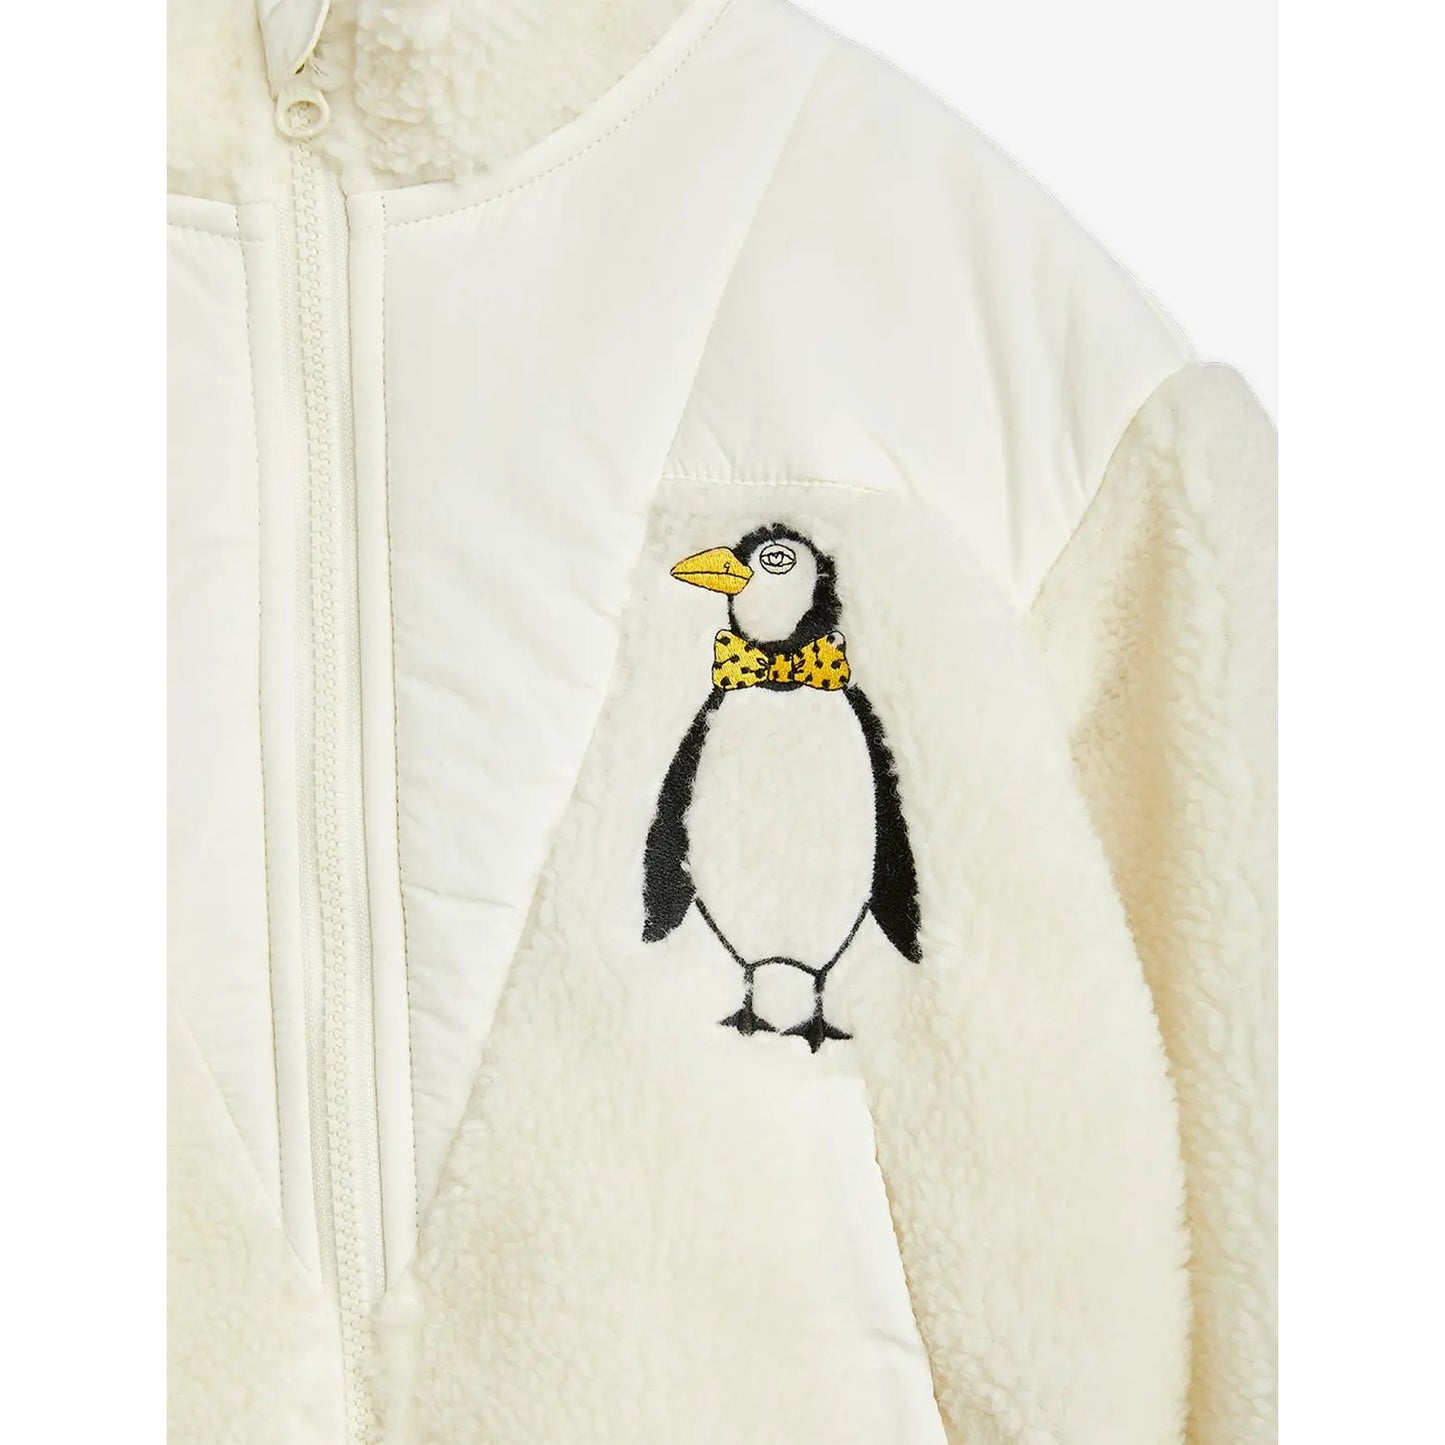 MINI RODINI Penguin Pile Zip Jacket